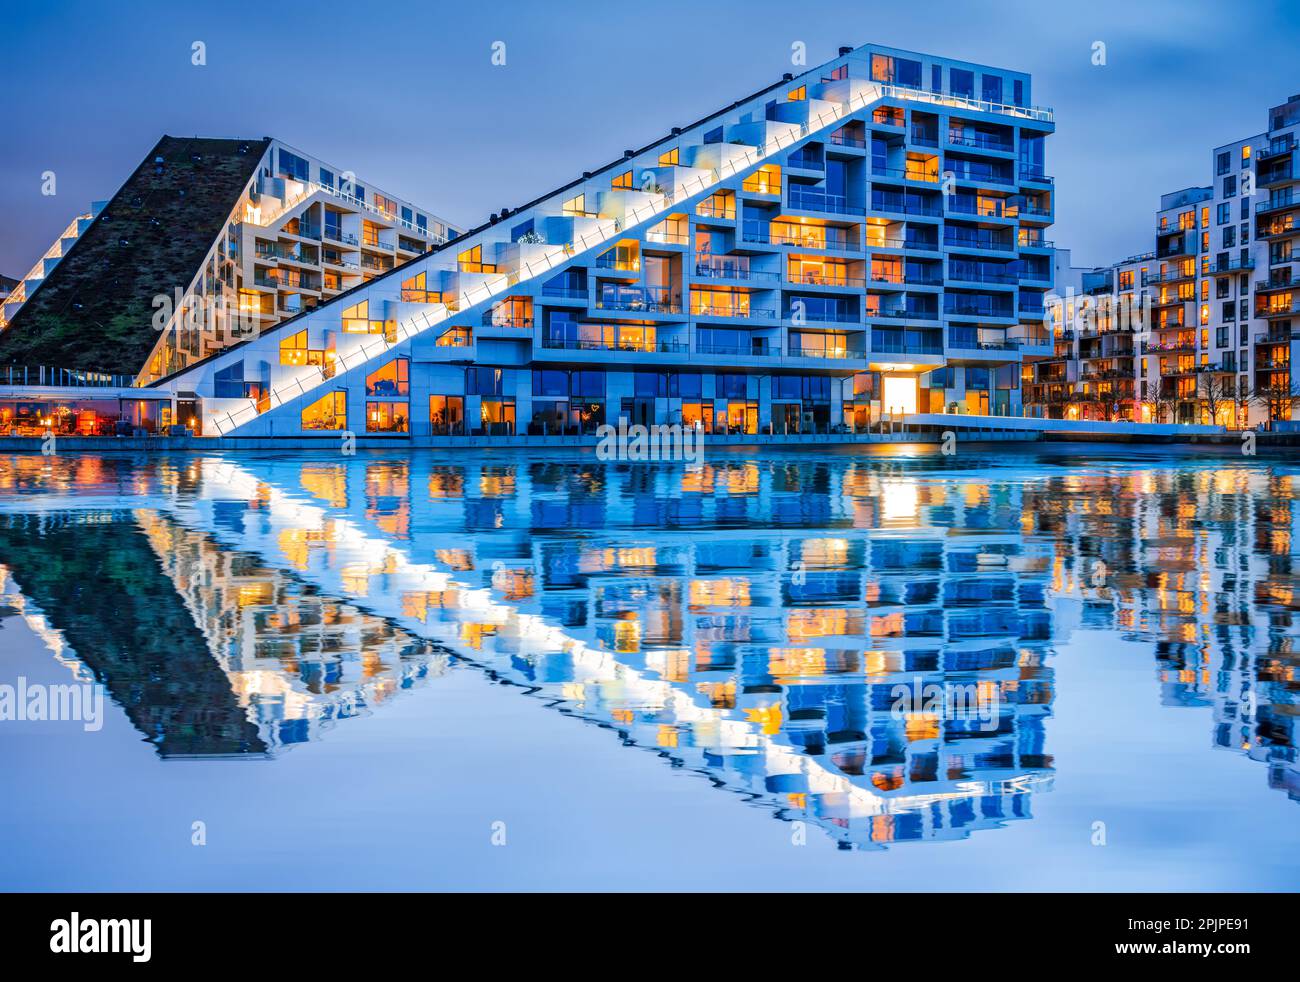 Kopenhagen, Dänemark. 8 House, auch bekannt als Big House, großes gemischtes Bauprojekt, neuer Vorort von Orestad in Kobenhavn. Stockfoto